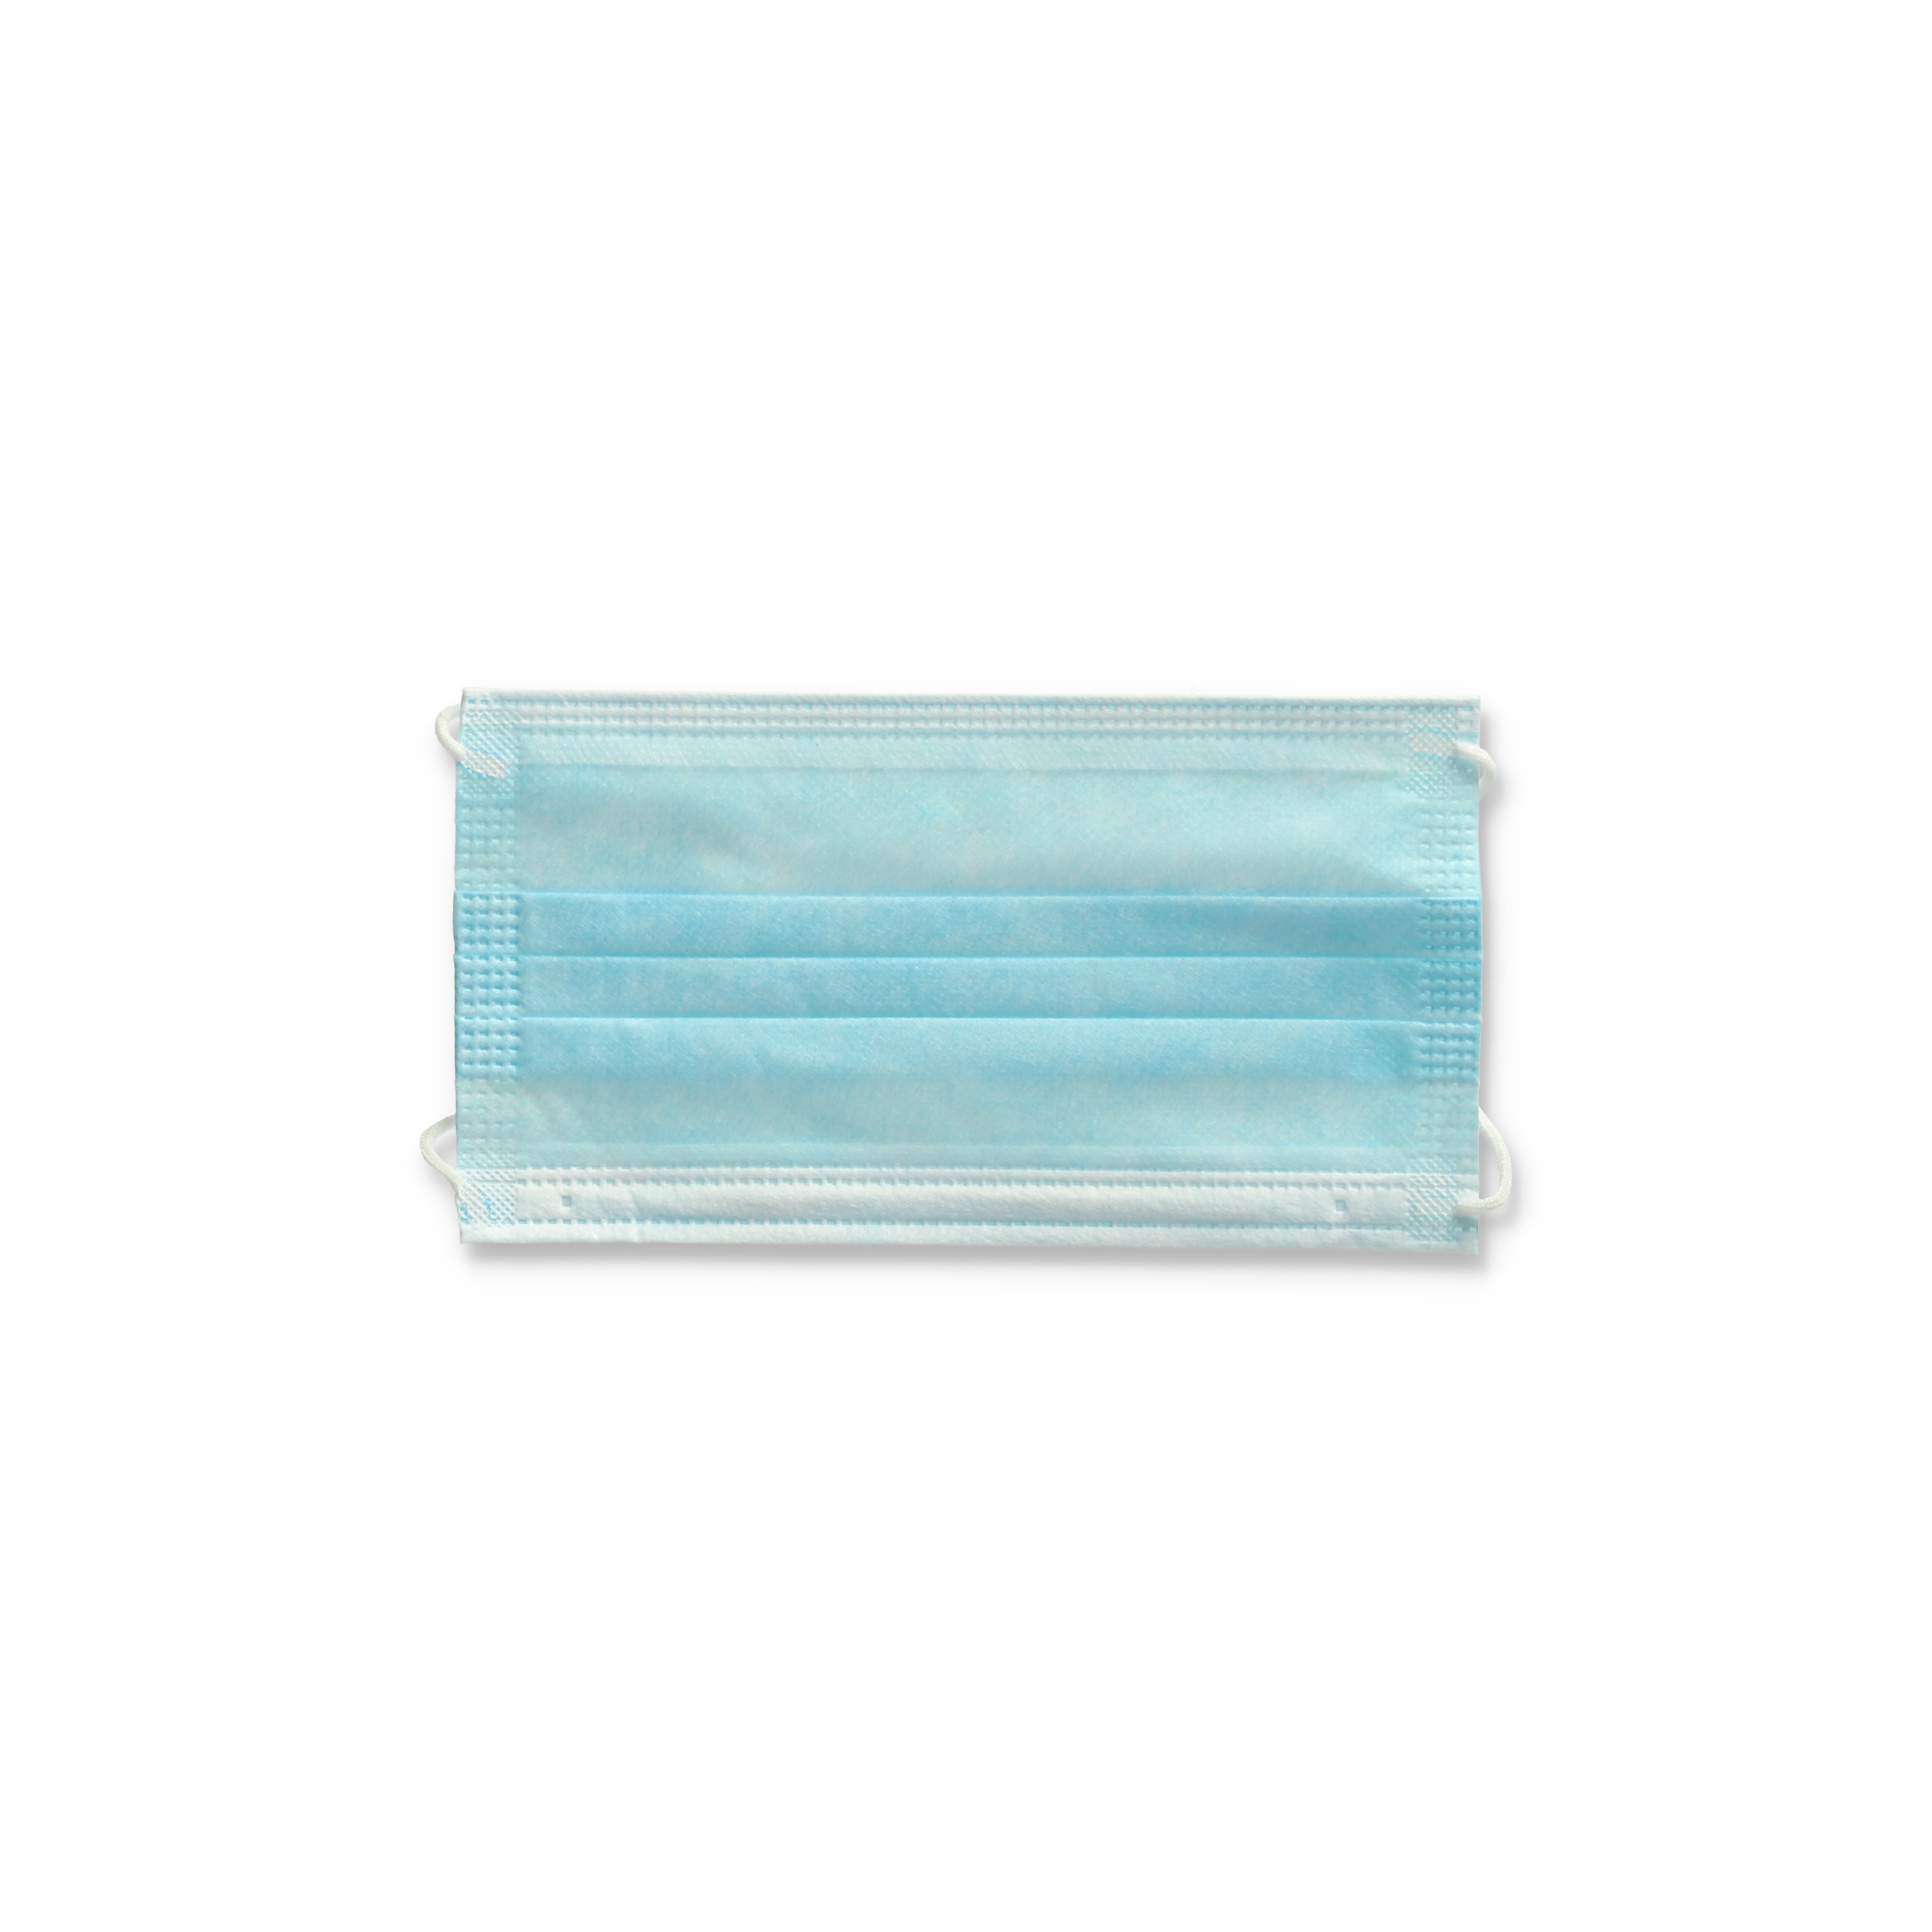 Einweg-Gesichtsmaske blau, 25 Stück + product picture